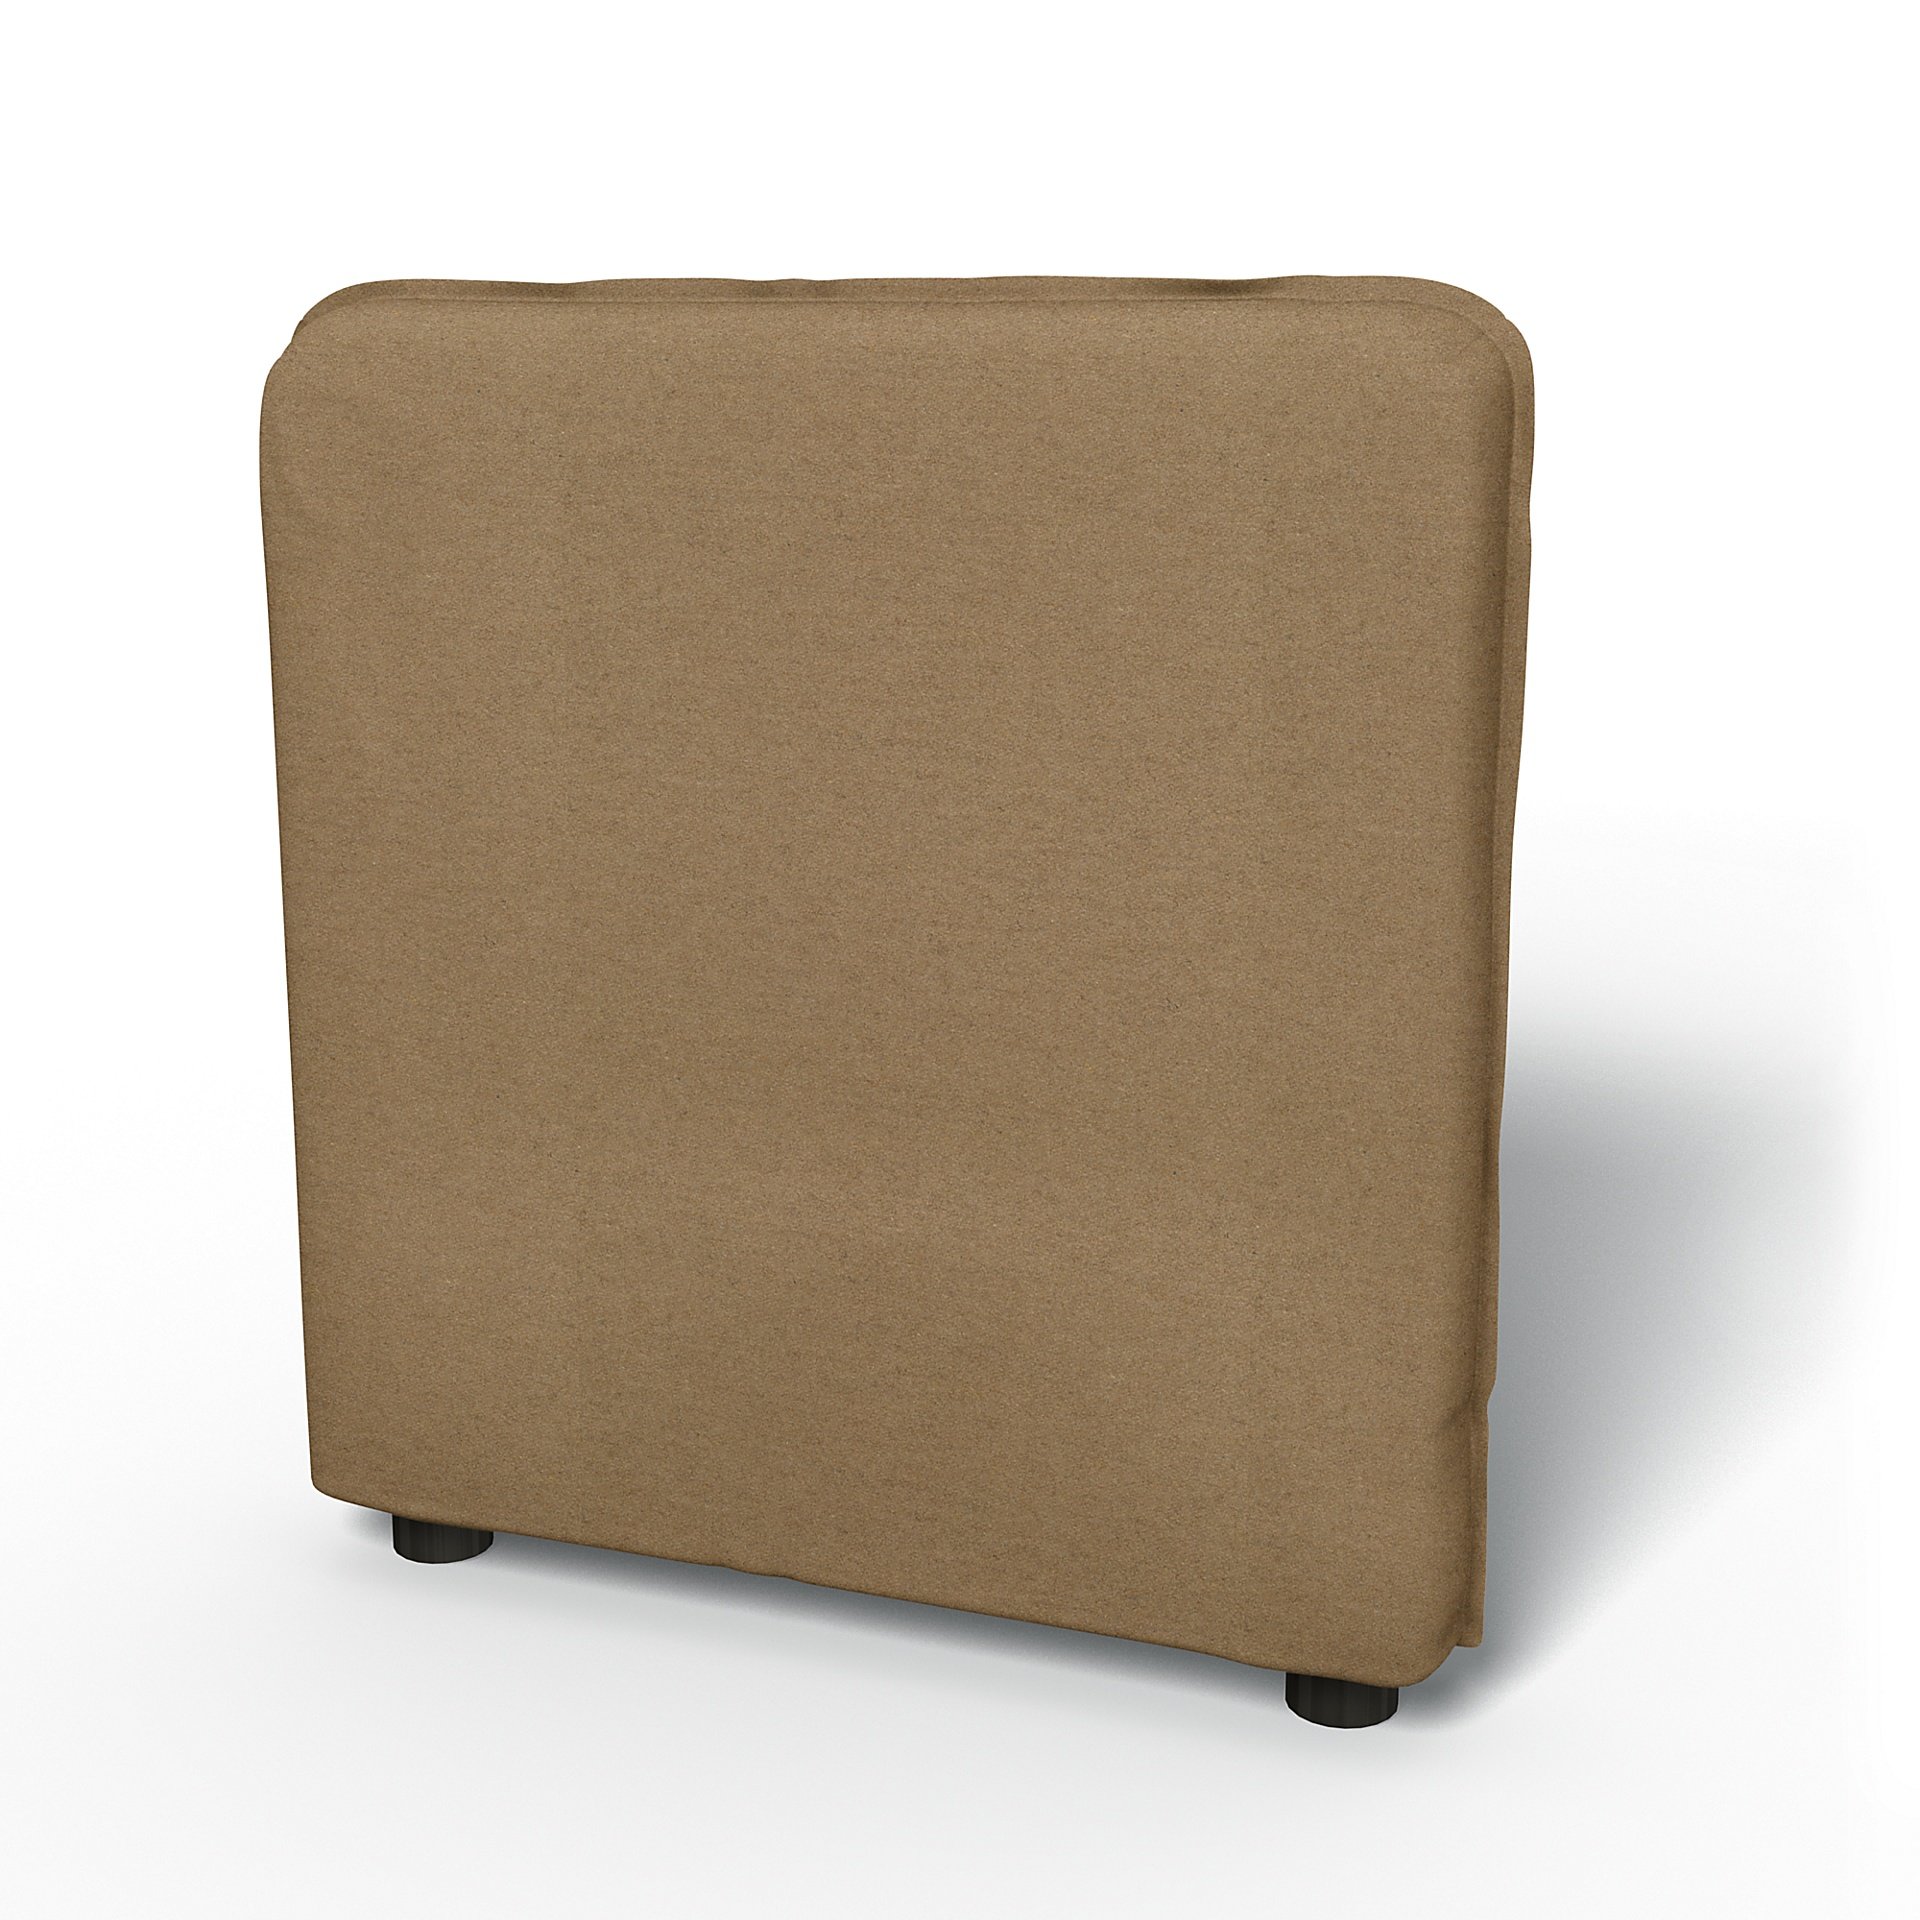 IKEA - Vallentuna Armrest Cover (80x60x13cm), Sand, Wool - Bemz